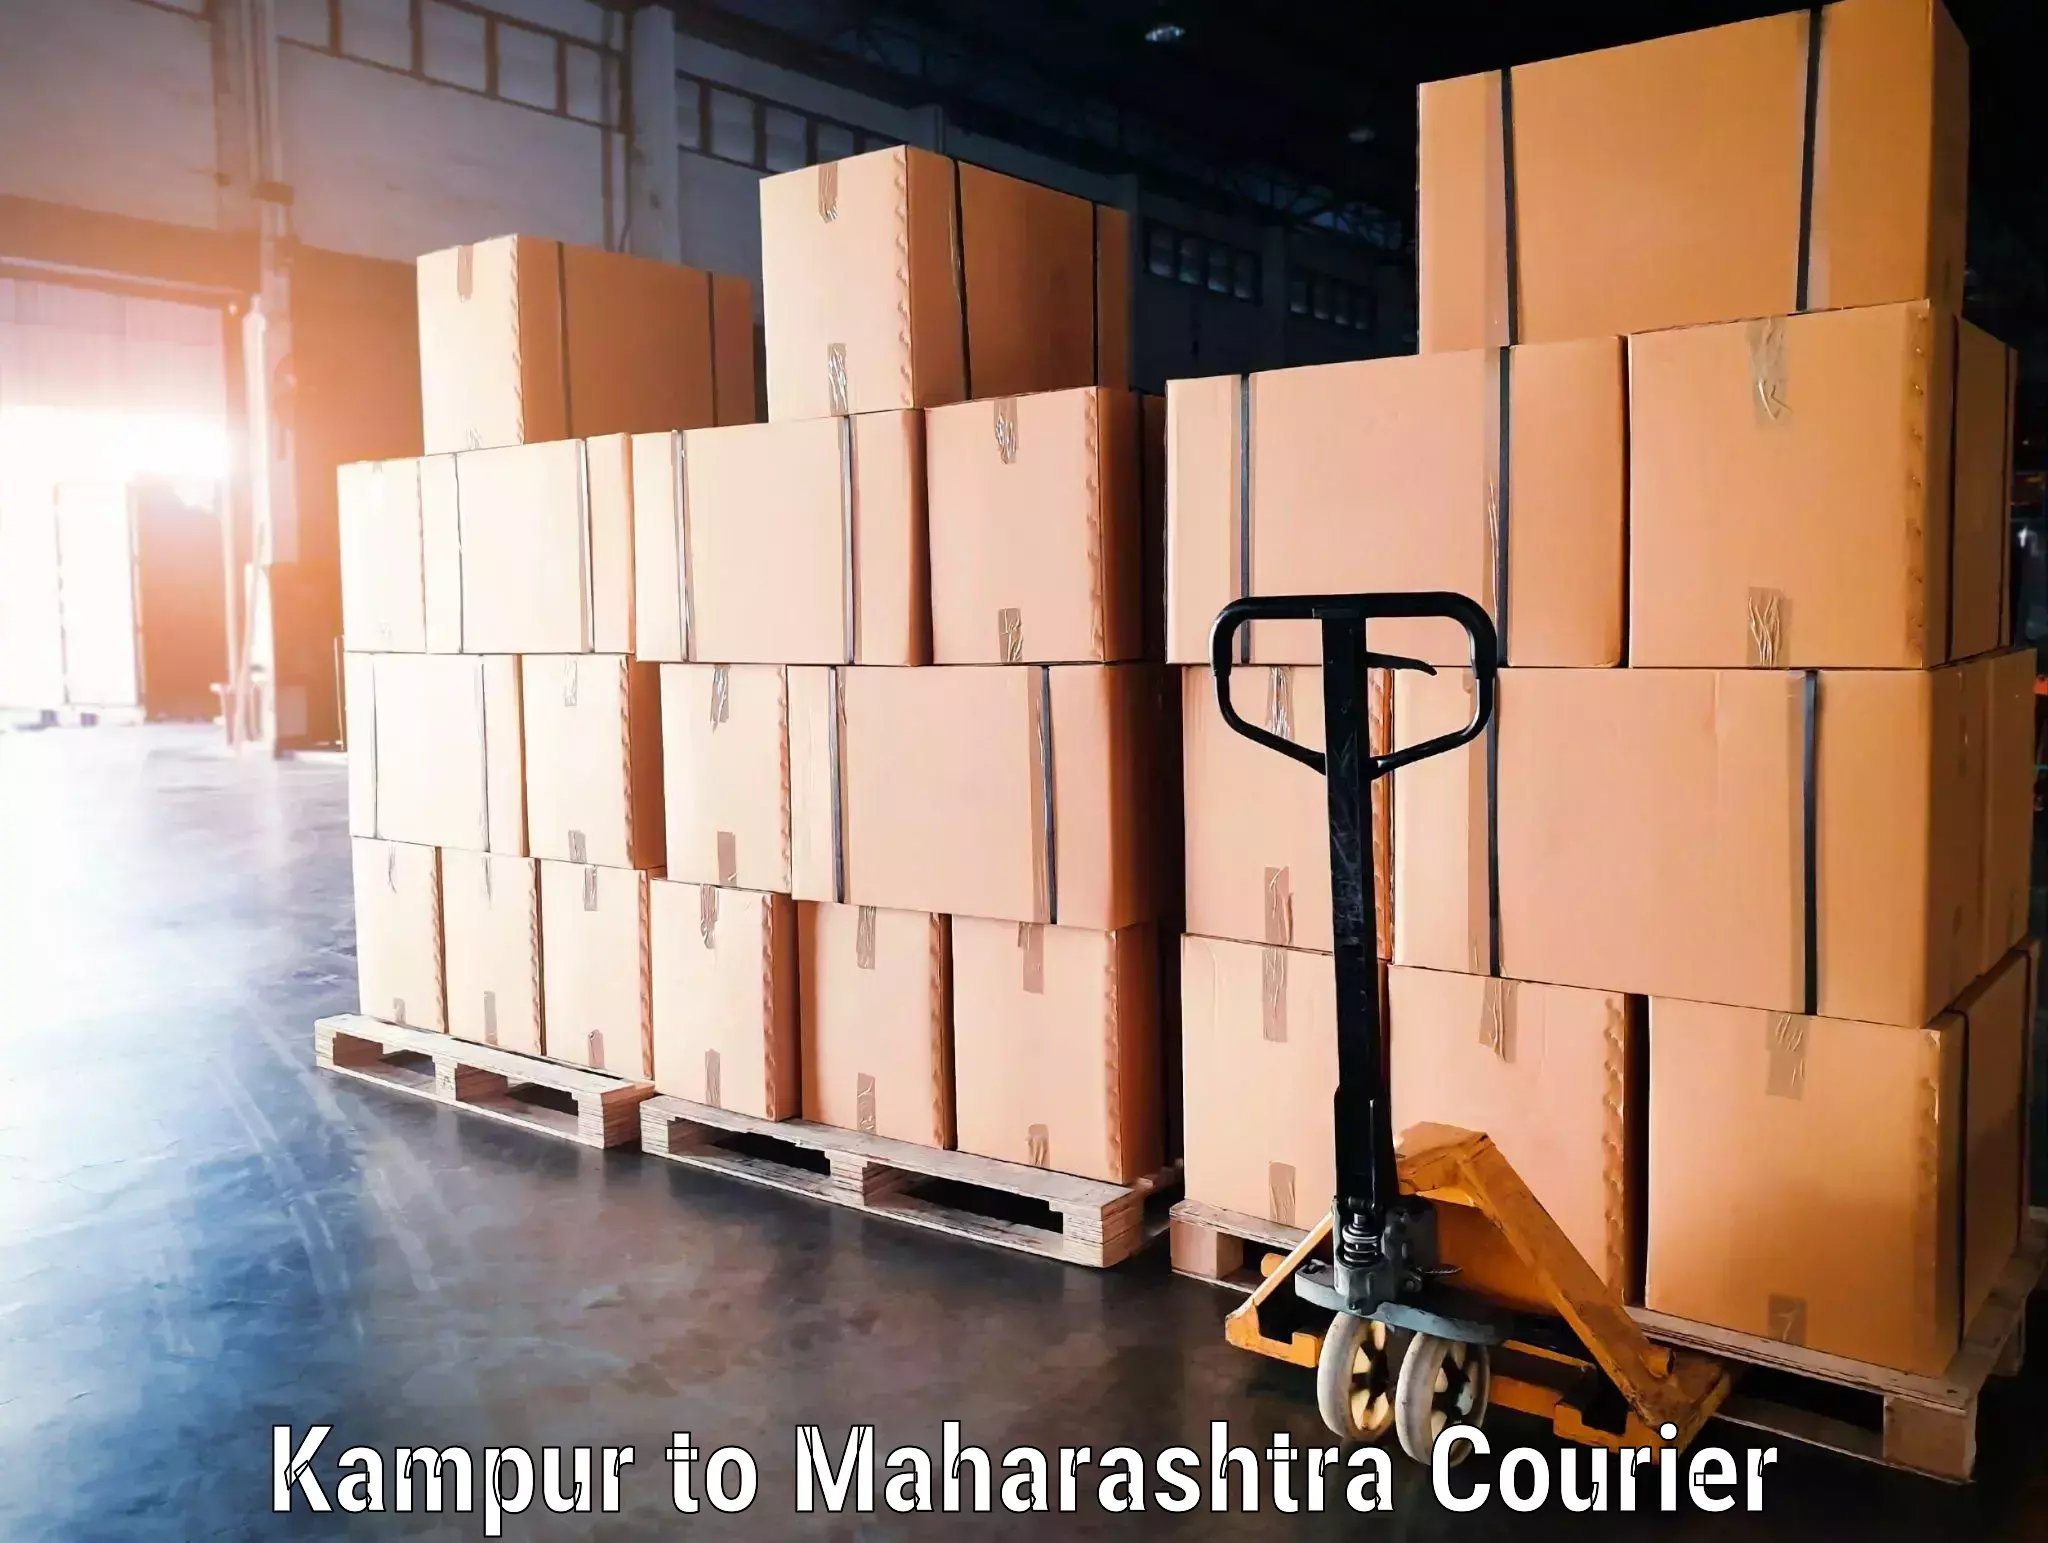 Baggage shipping experience Kampur to Maharashtra